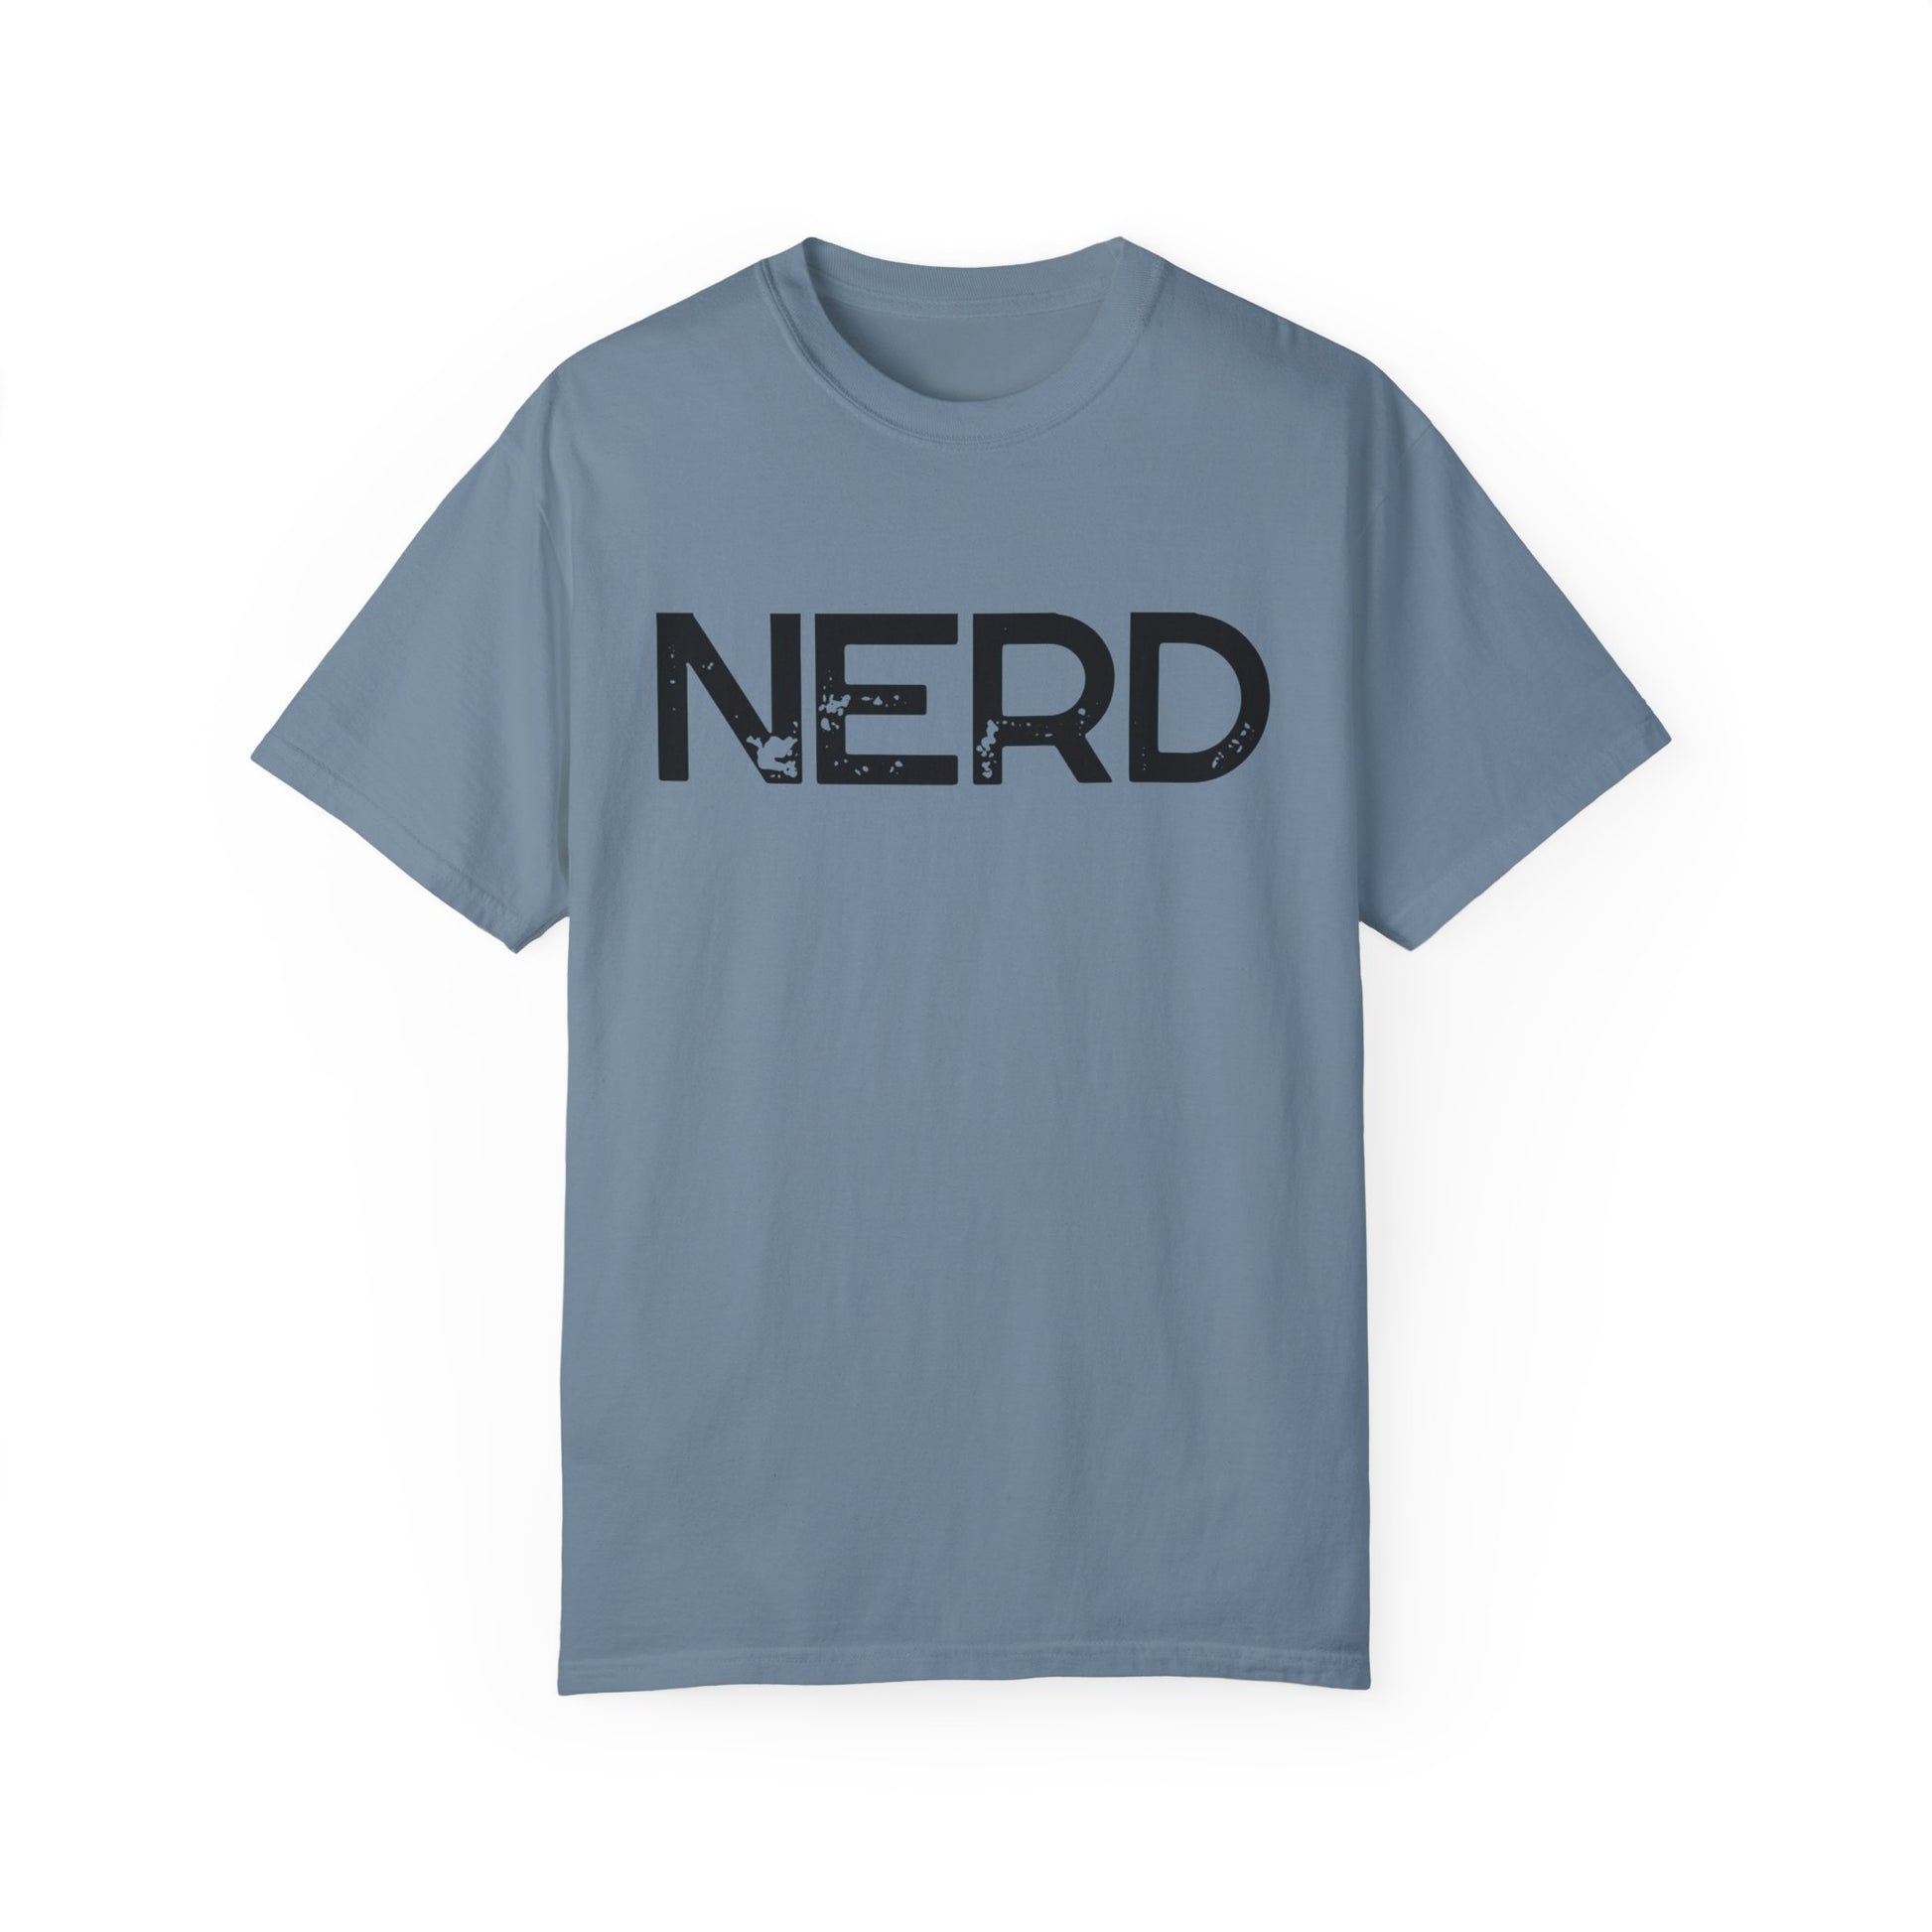 nerd t-shirt